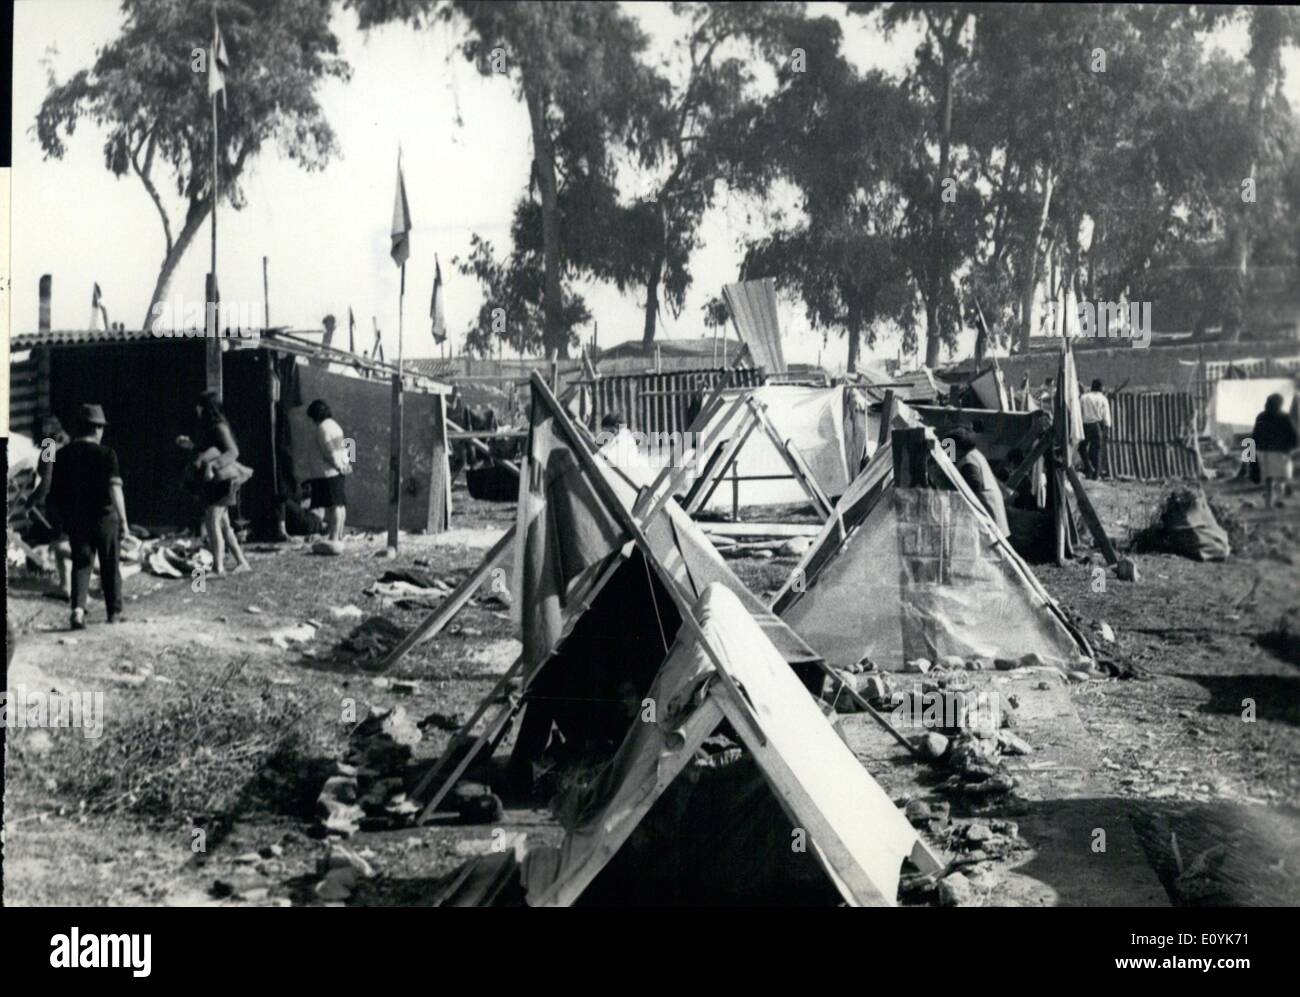 08 août 1970 - Chili : La Prensa Latina photo montre l'occupation de terrains appartenant à la faculté d'Agronomie de Banque D'Images